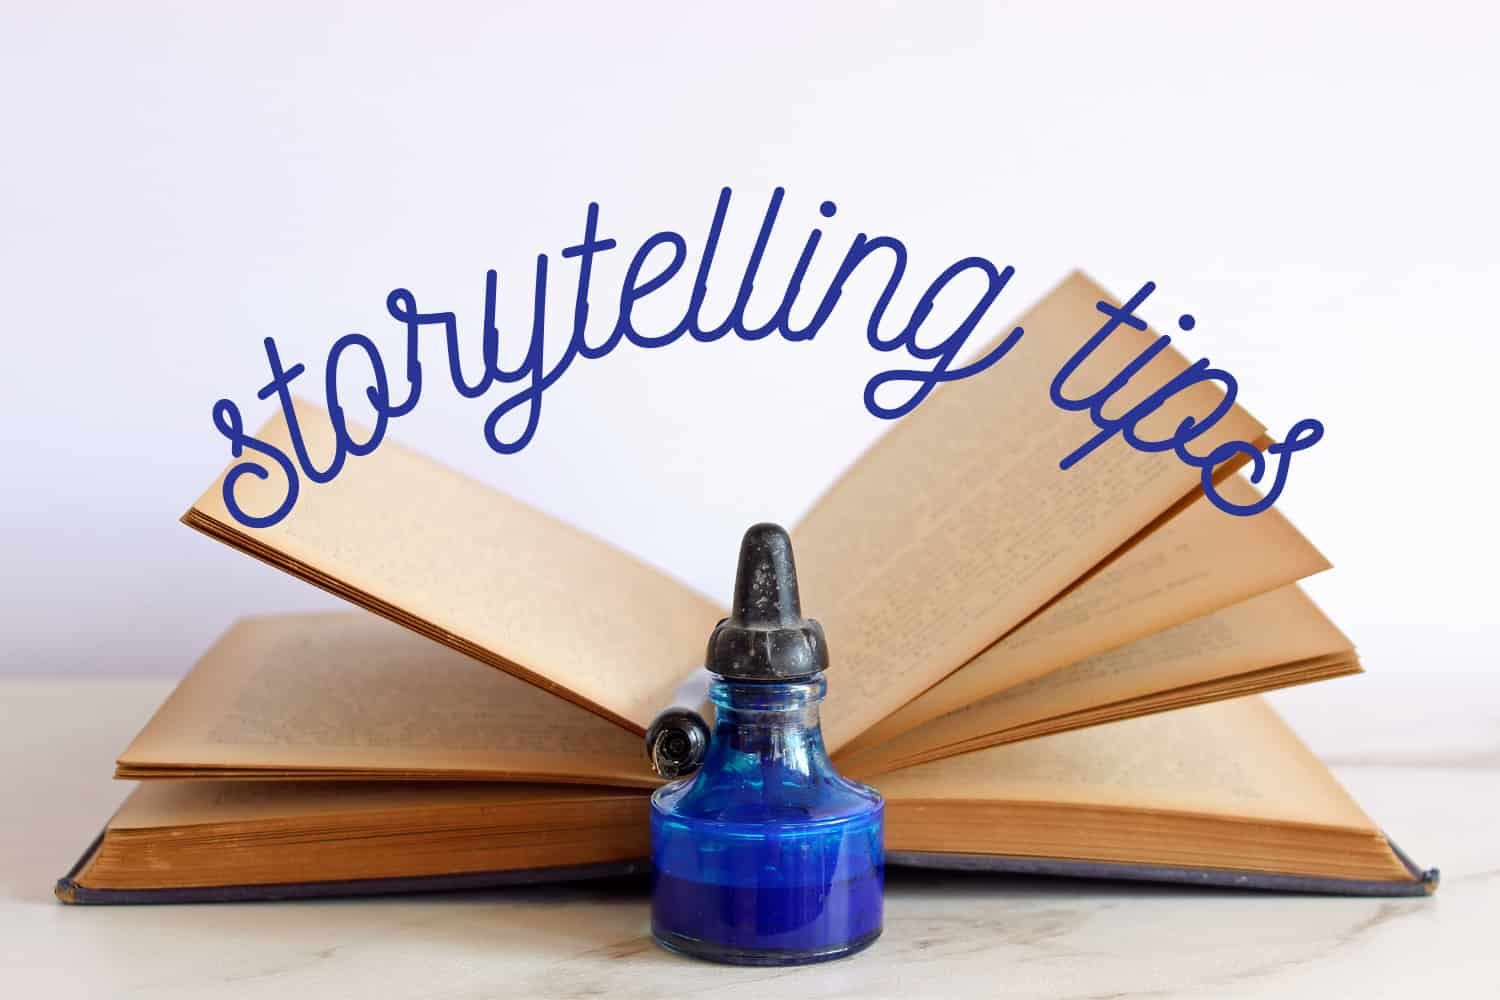 Storytelling%20tips%20-%20OT%20Psalm%20150%20-%20Have%20you%20heard-9b19b892 Storytelling tips